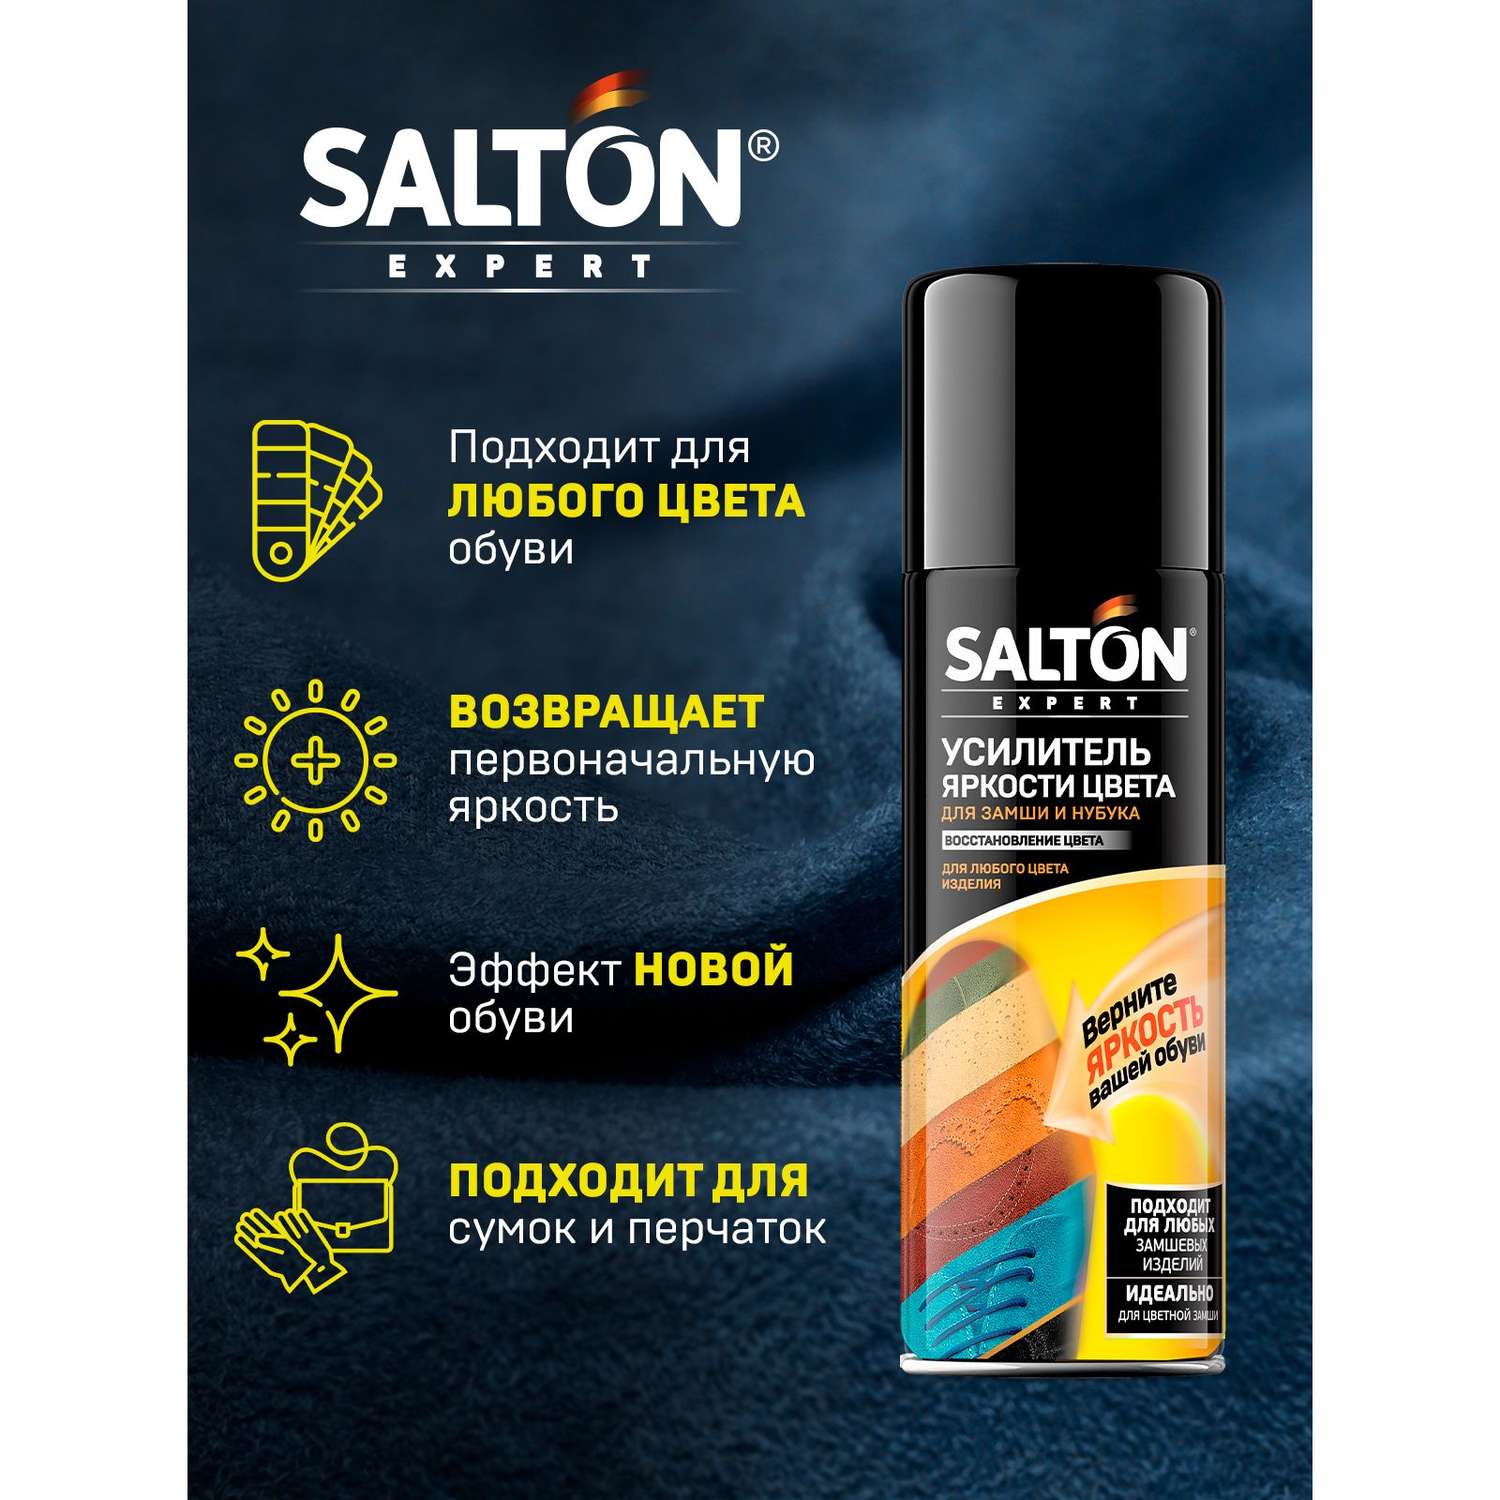 Усилитель яркости цвета Salton Expert 55785358 - фото 4